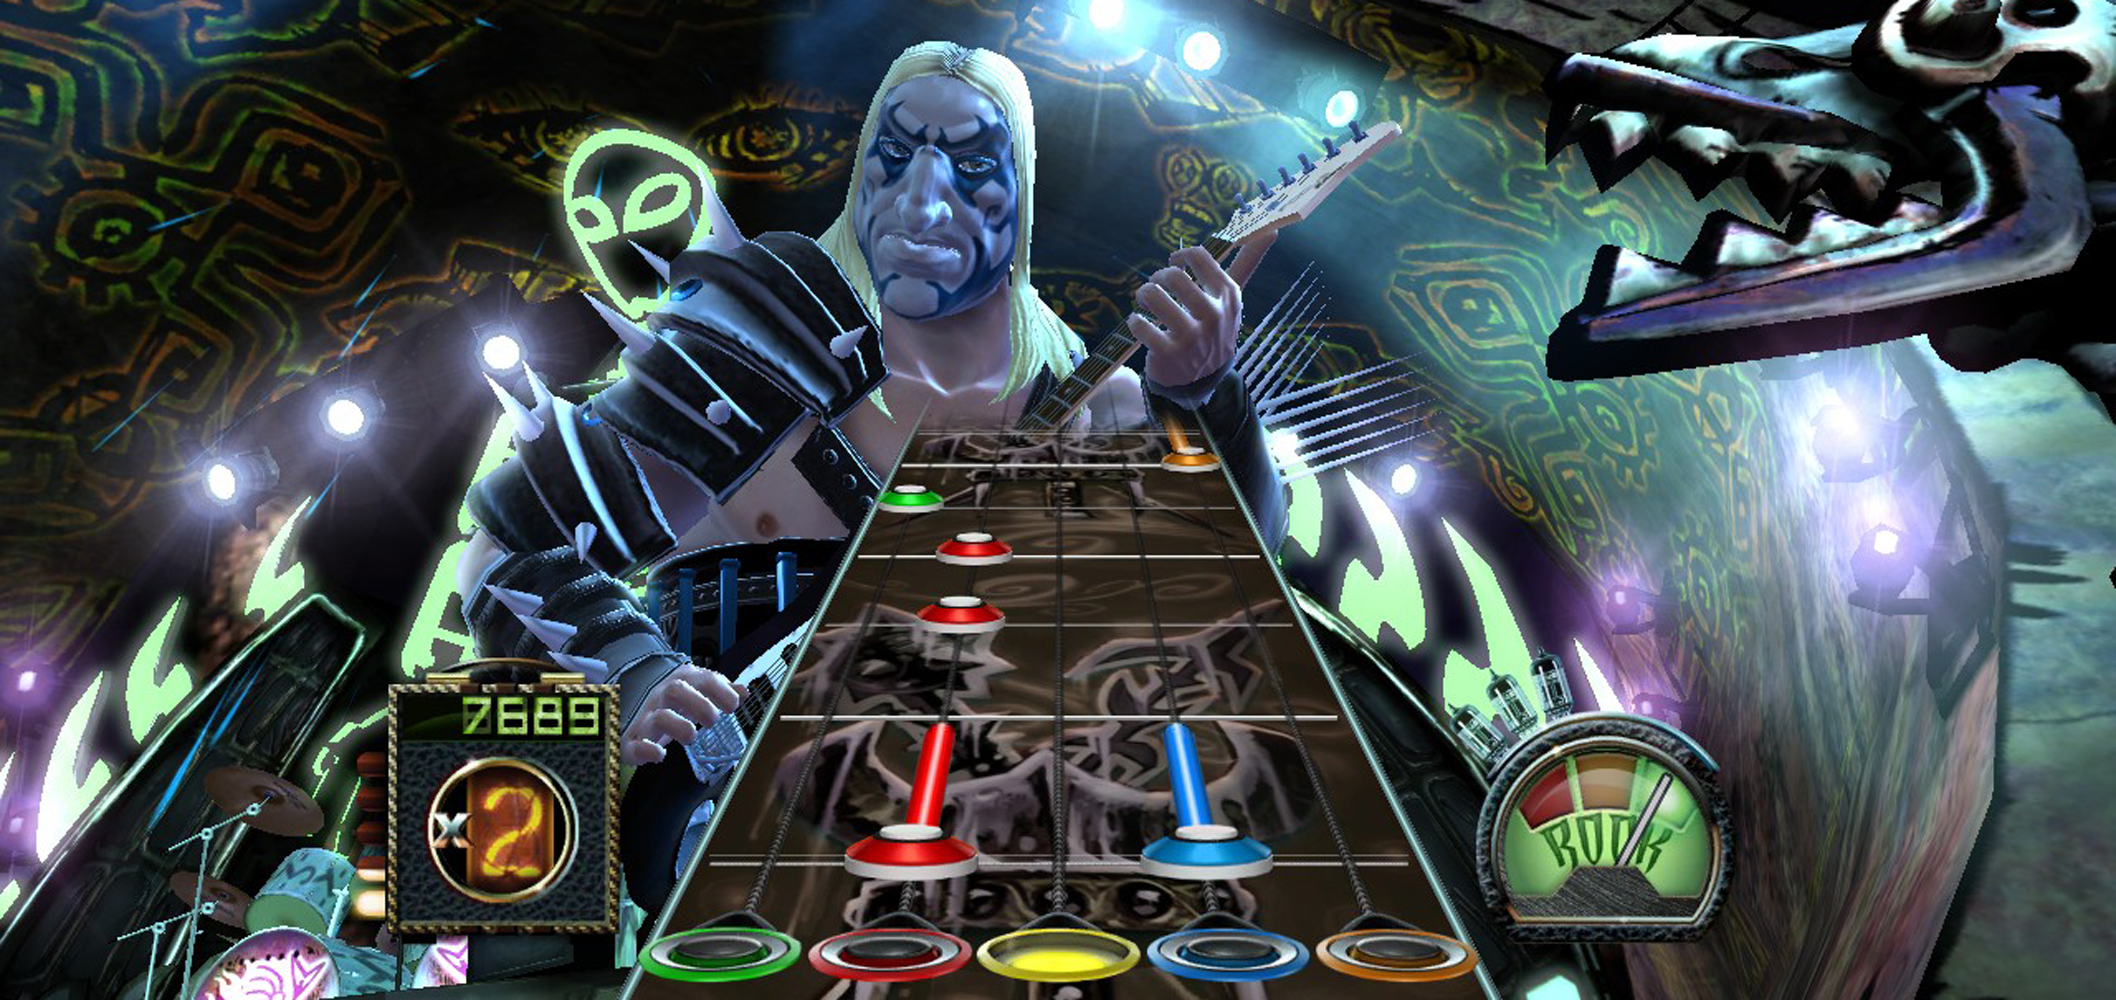 Battle Audioslave's Tom Morello in Guitar Hero III